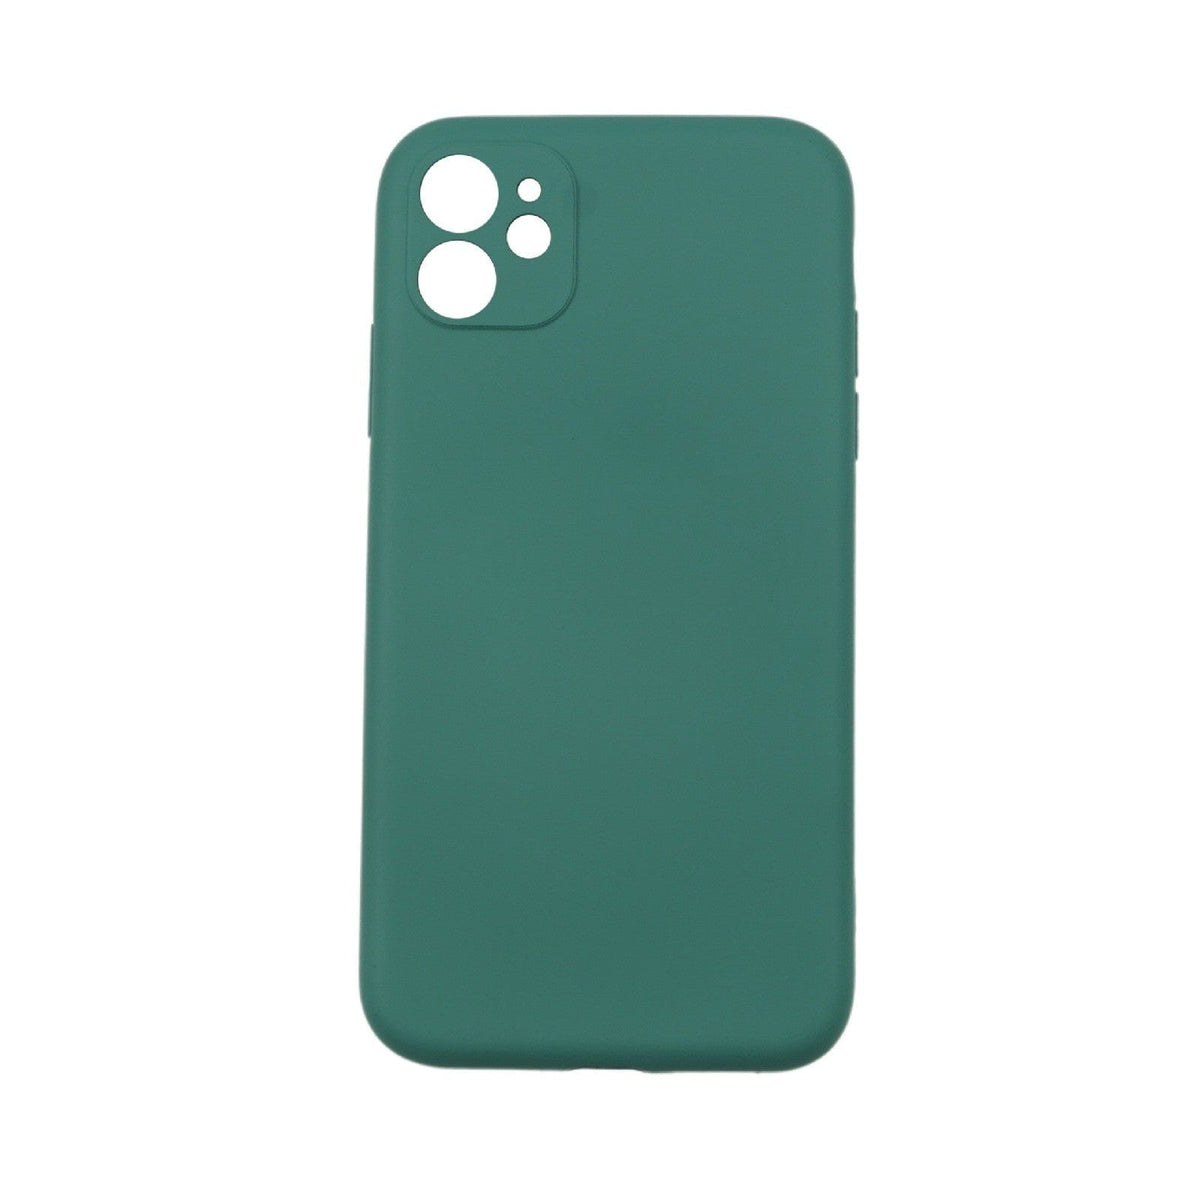 Husa protectie compatibila cu Apple iPhone 11 Pro Max Liquid Silicone Case Verde